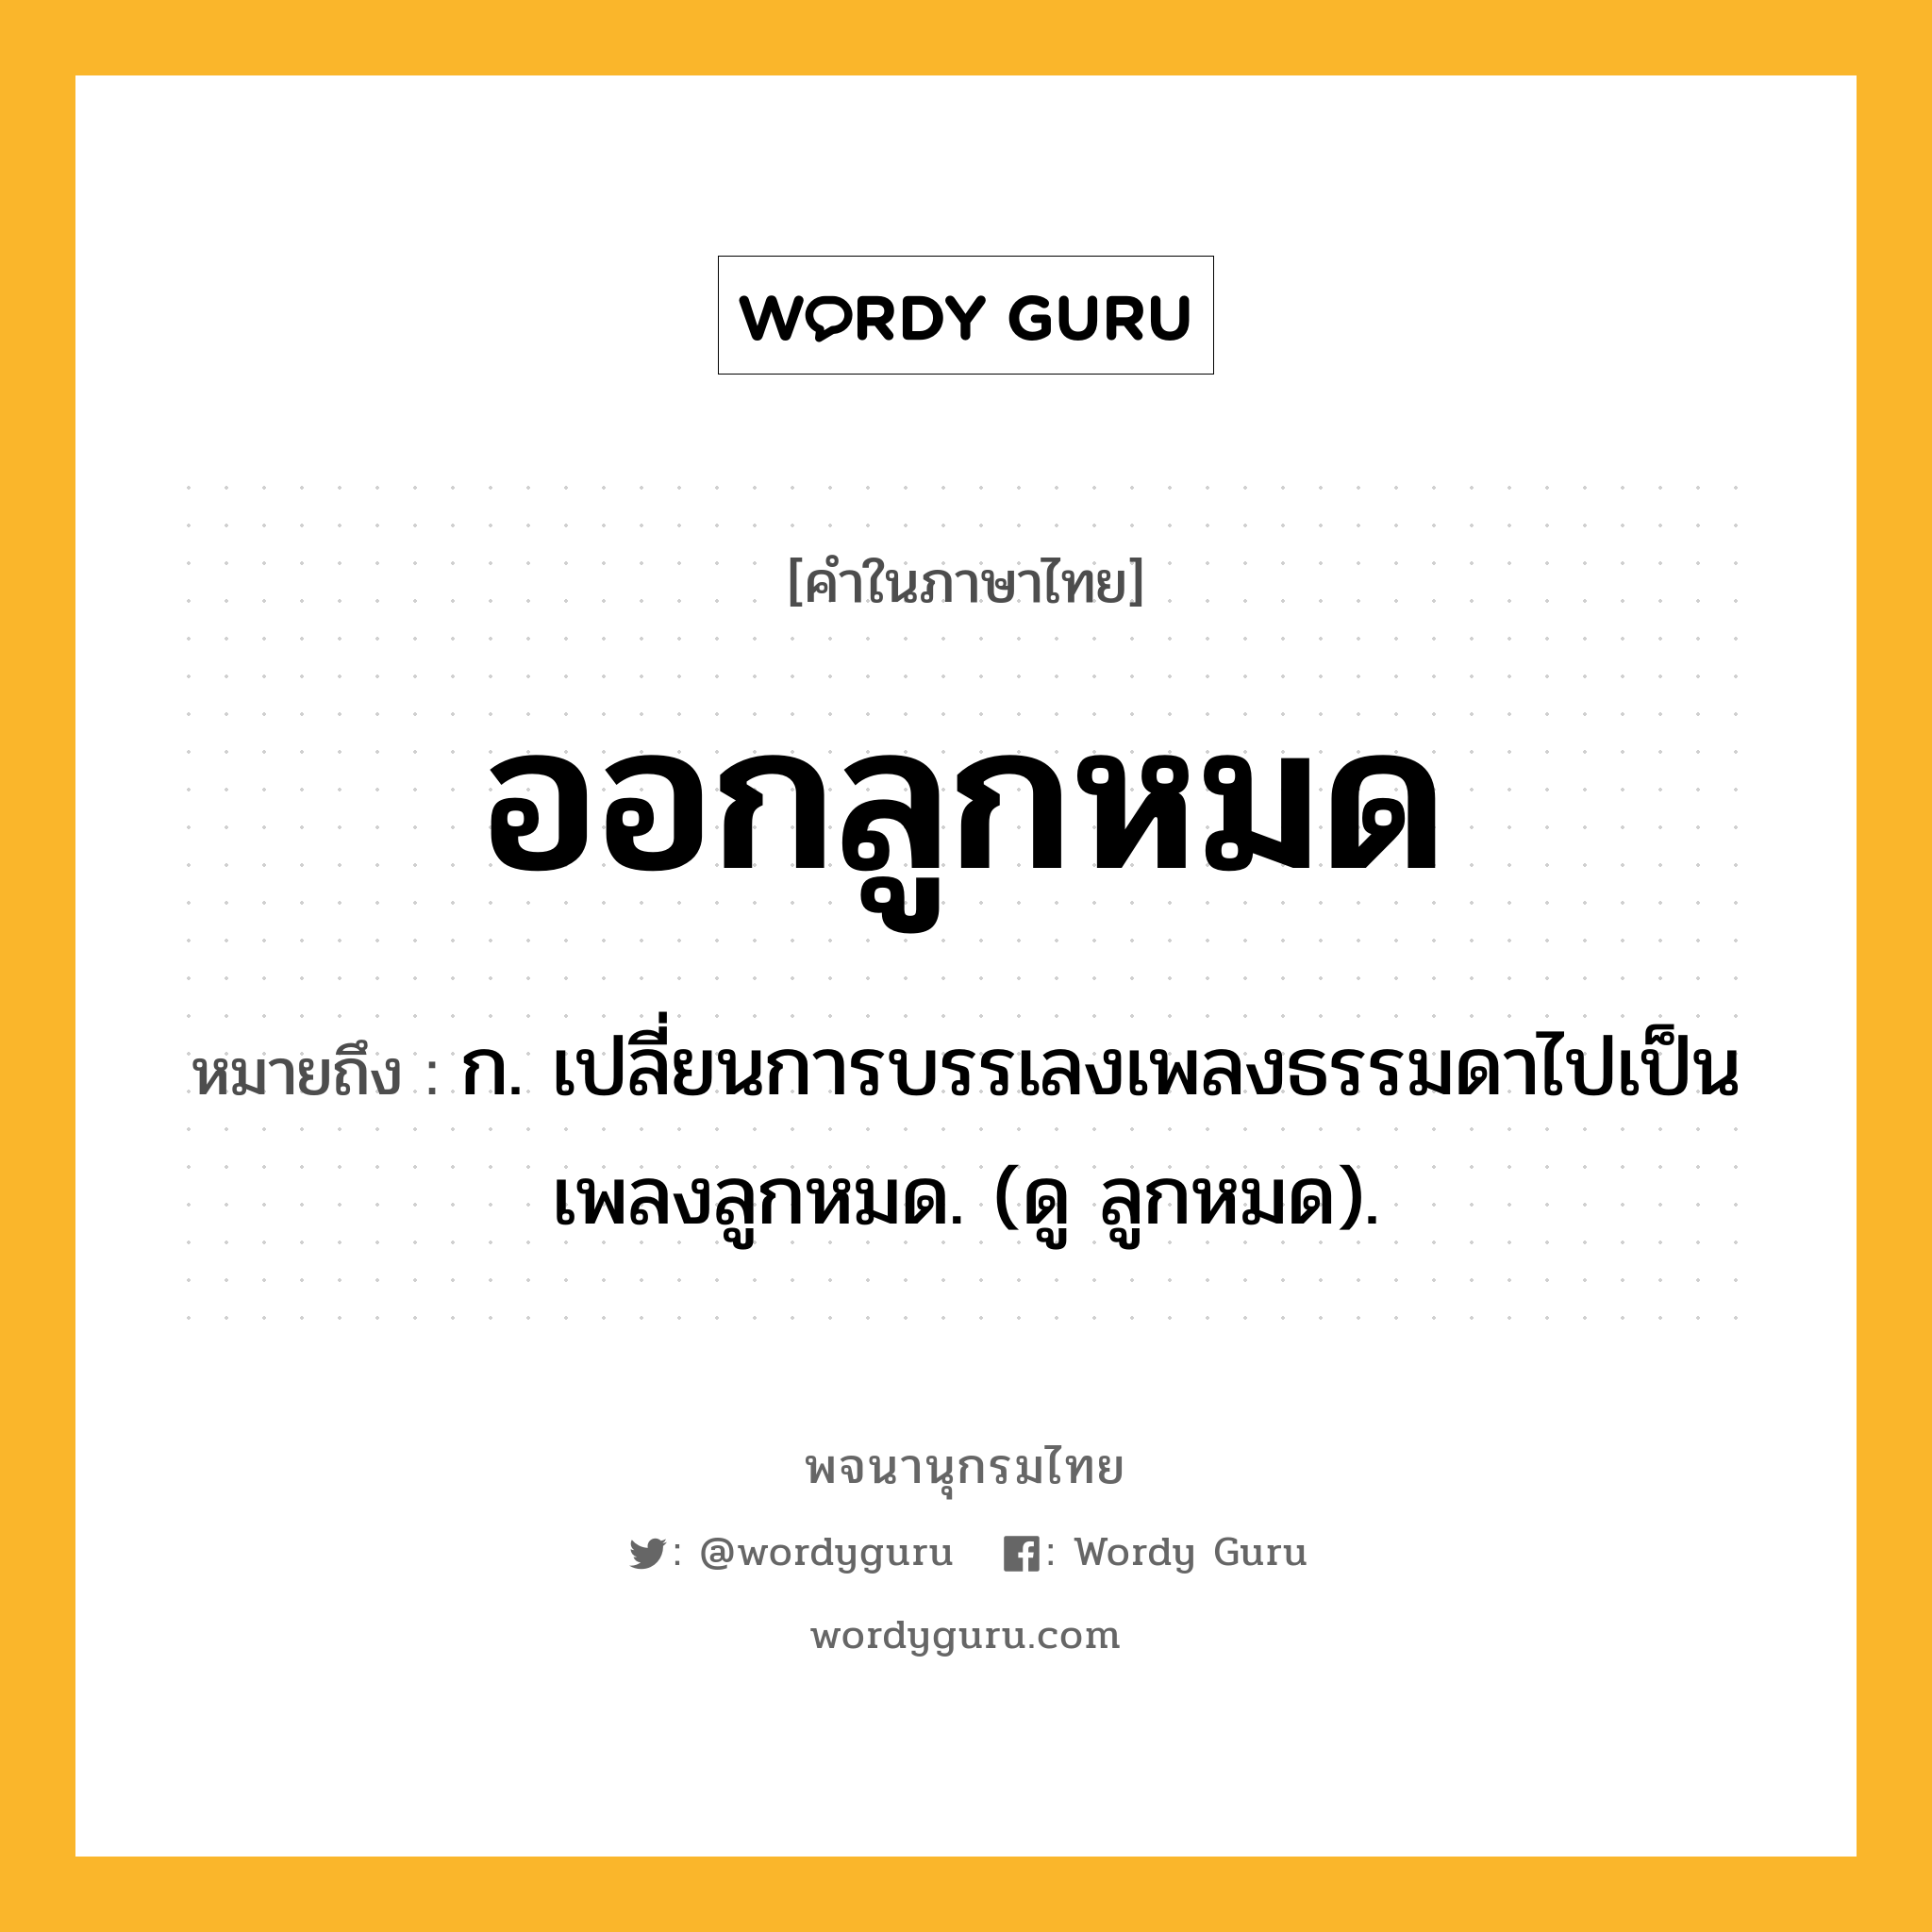 ออกลูกหมด หมายถึงอะไร?, คำในภาษาไทย ออกลูกหมด หมายถึง ก. เปลี่ยนการบรรเลงเพลงธรรมดาไปเป็นเพลงลูกหมด. (ดู ลูกหมด).